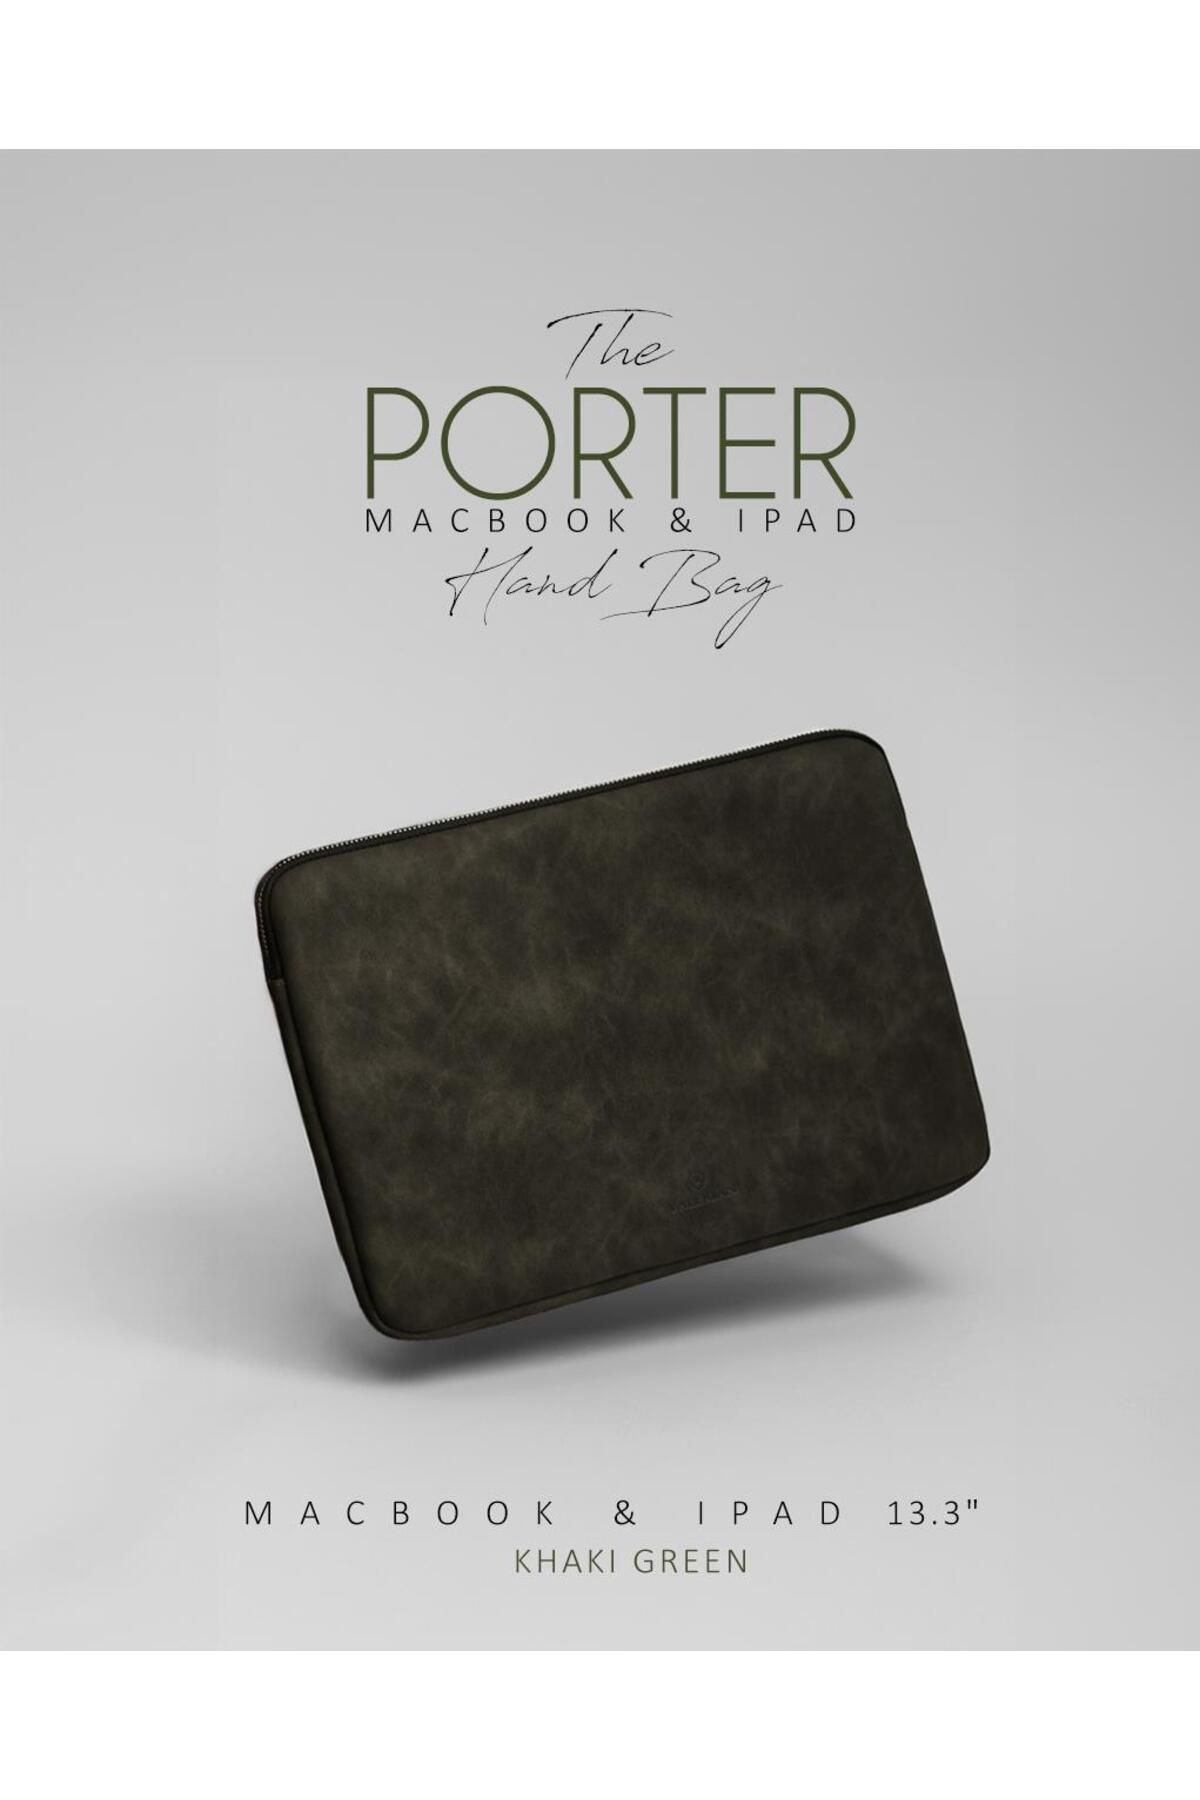 Valerian Porter Hand Bag 13.3 Inch Laptop Çantası - Tablet Çantası Haki Yeşili